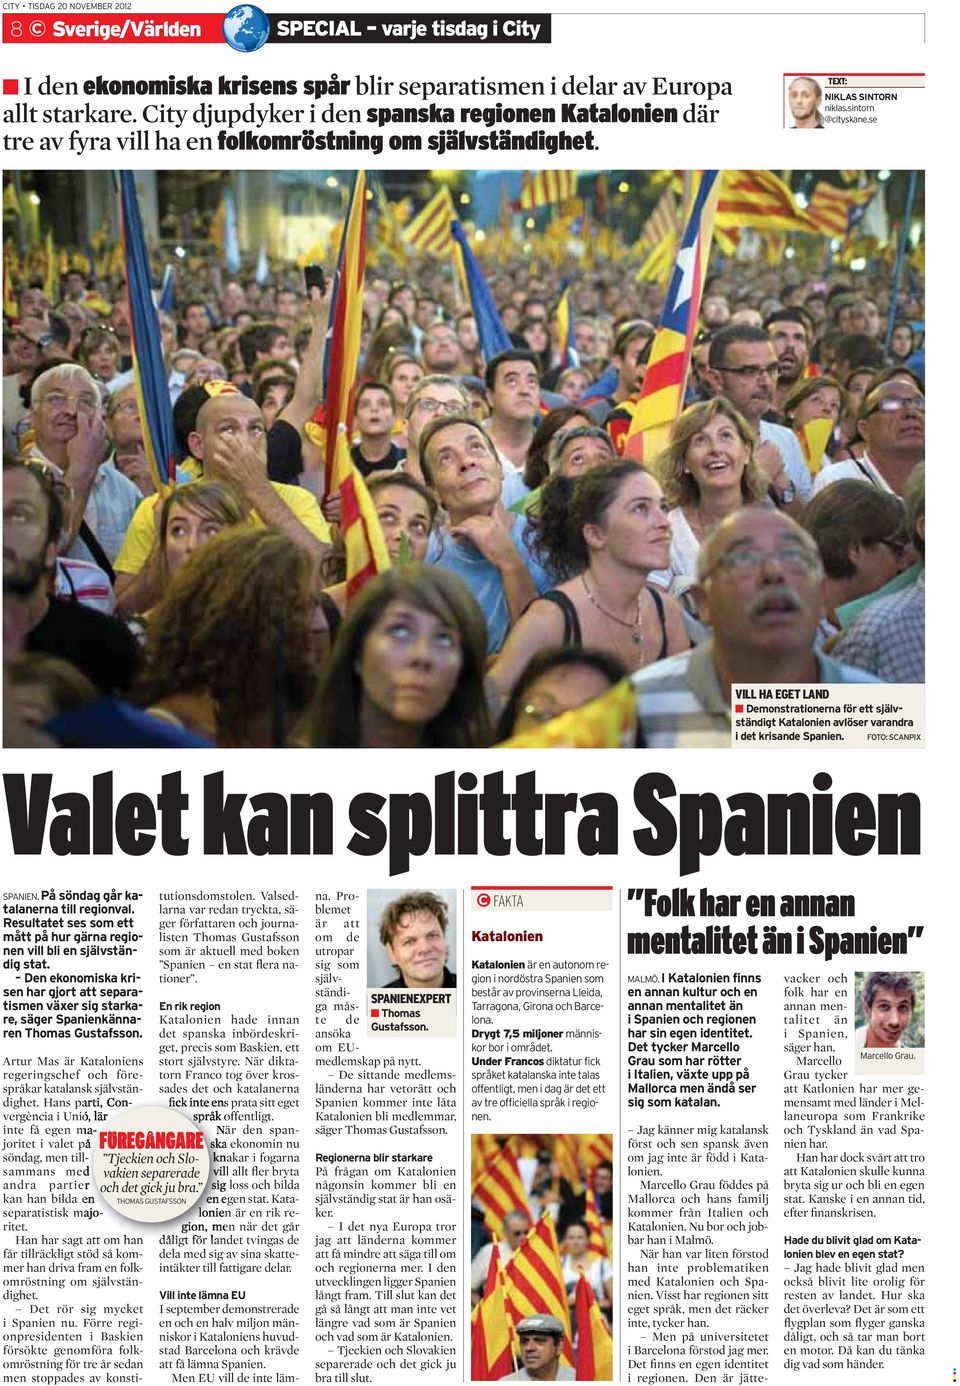 se VILL HA EGET LAND Demonstrationerna för ett självständigt Katalonien avlöser varandra i det krisande Spanien. FOTO: SCANPIX Valet kan splittra Spanien SPANIEN.